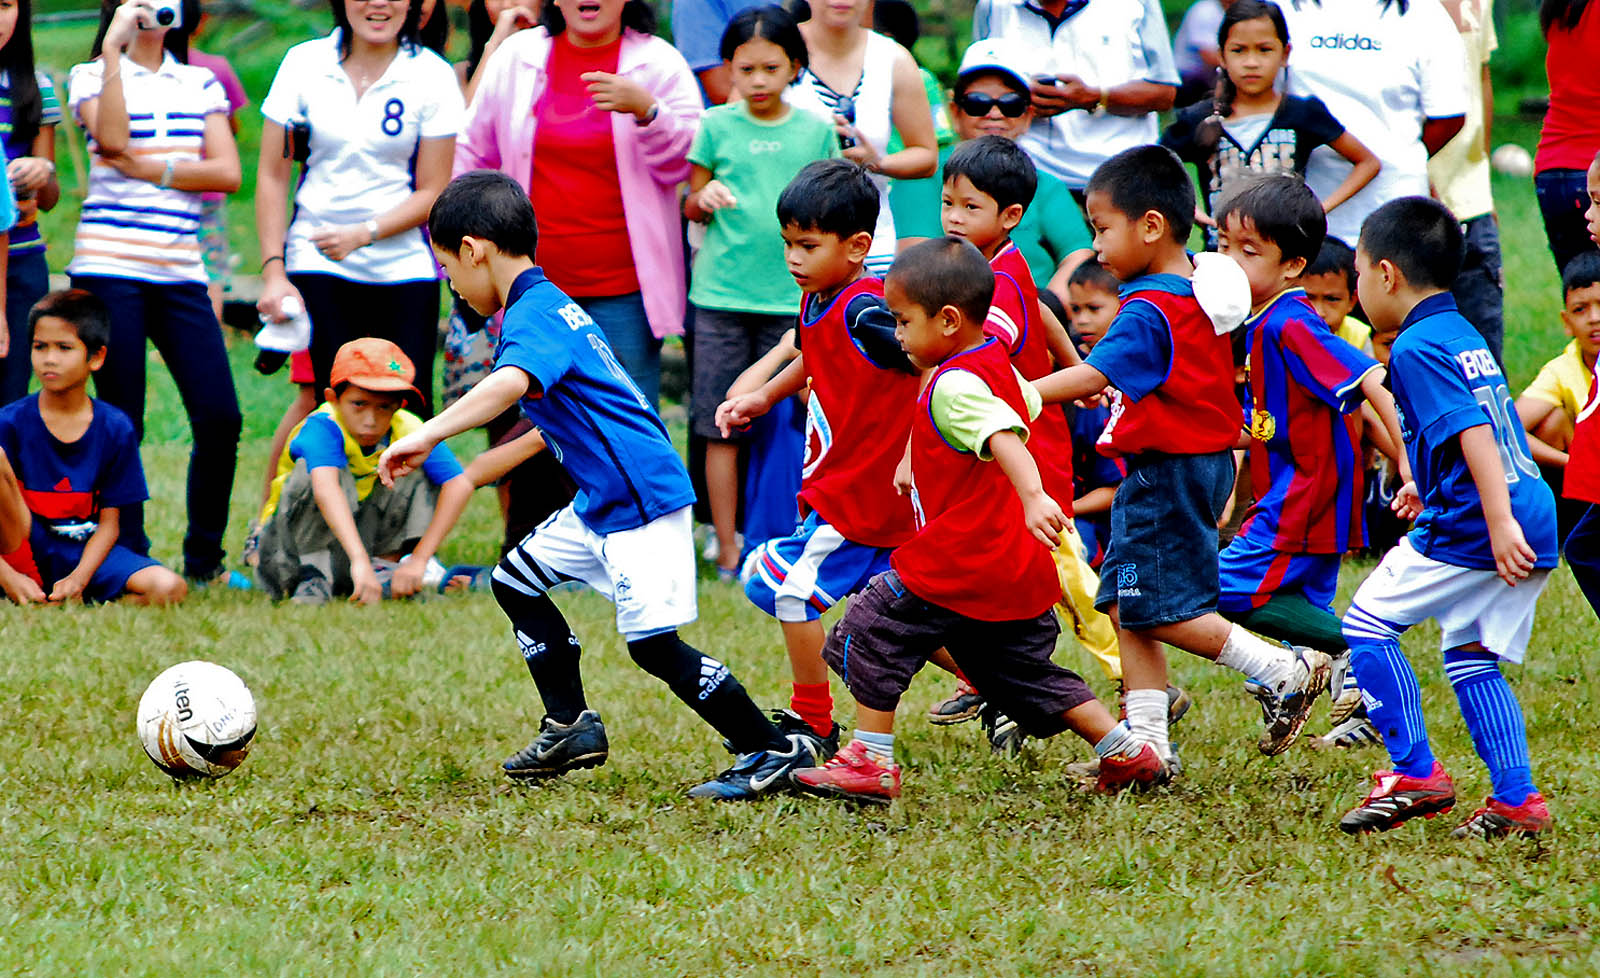 Азия дол. Детский футбол. Футбол дети. Футбольное поле для детей. Дети играют в футбол.